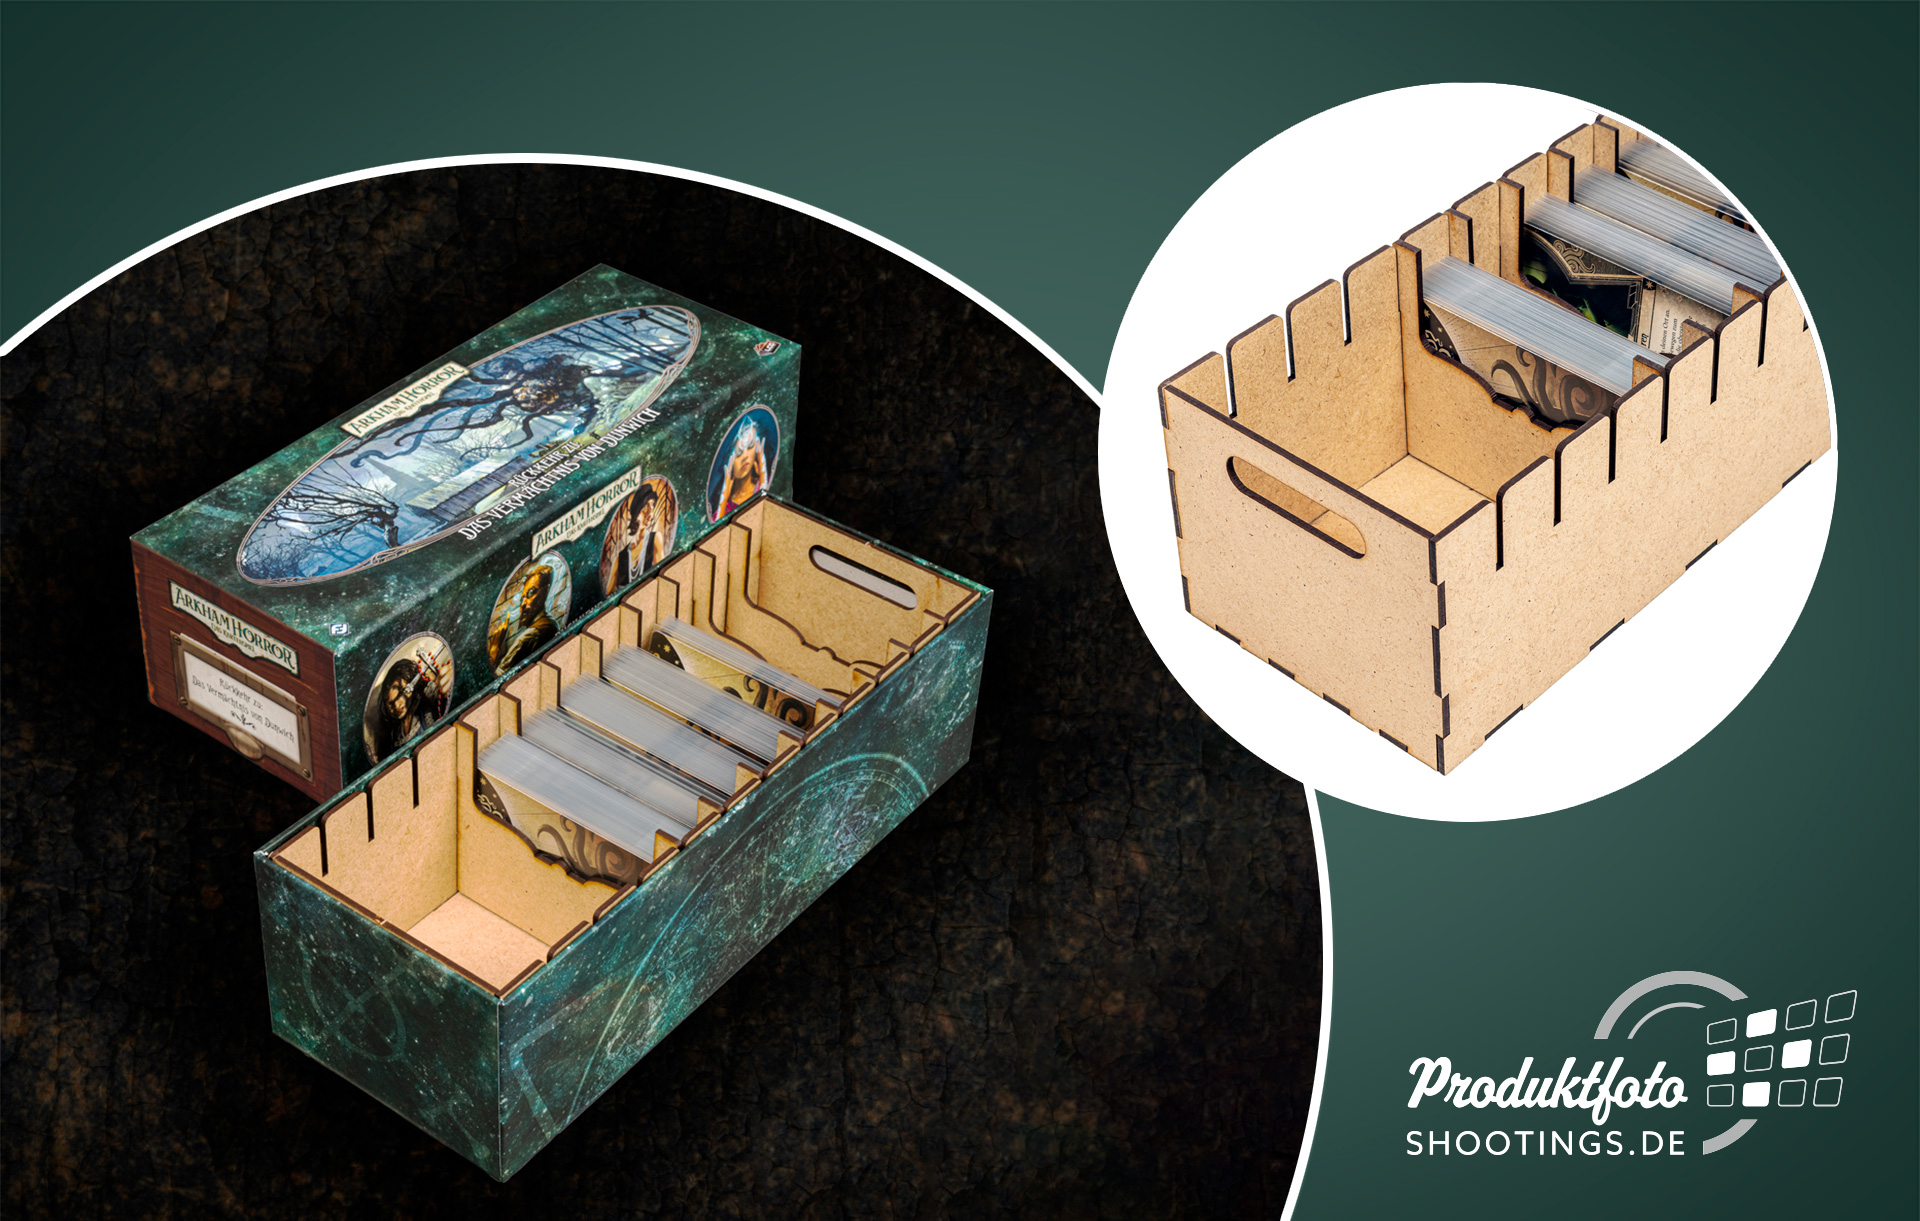 Ein Inlay für die Arkam Horror Spielebox aus Holz mit Trennwänden um die Spielkarten besser zu sortieren